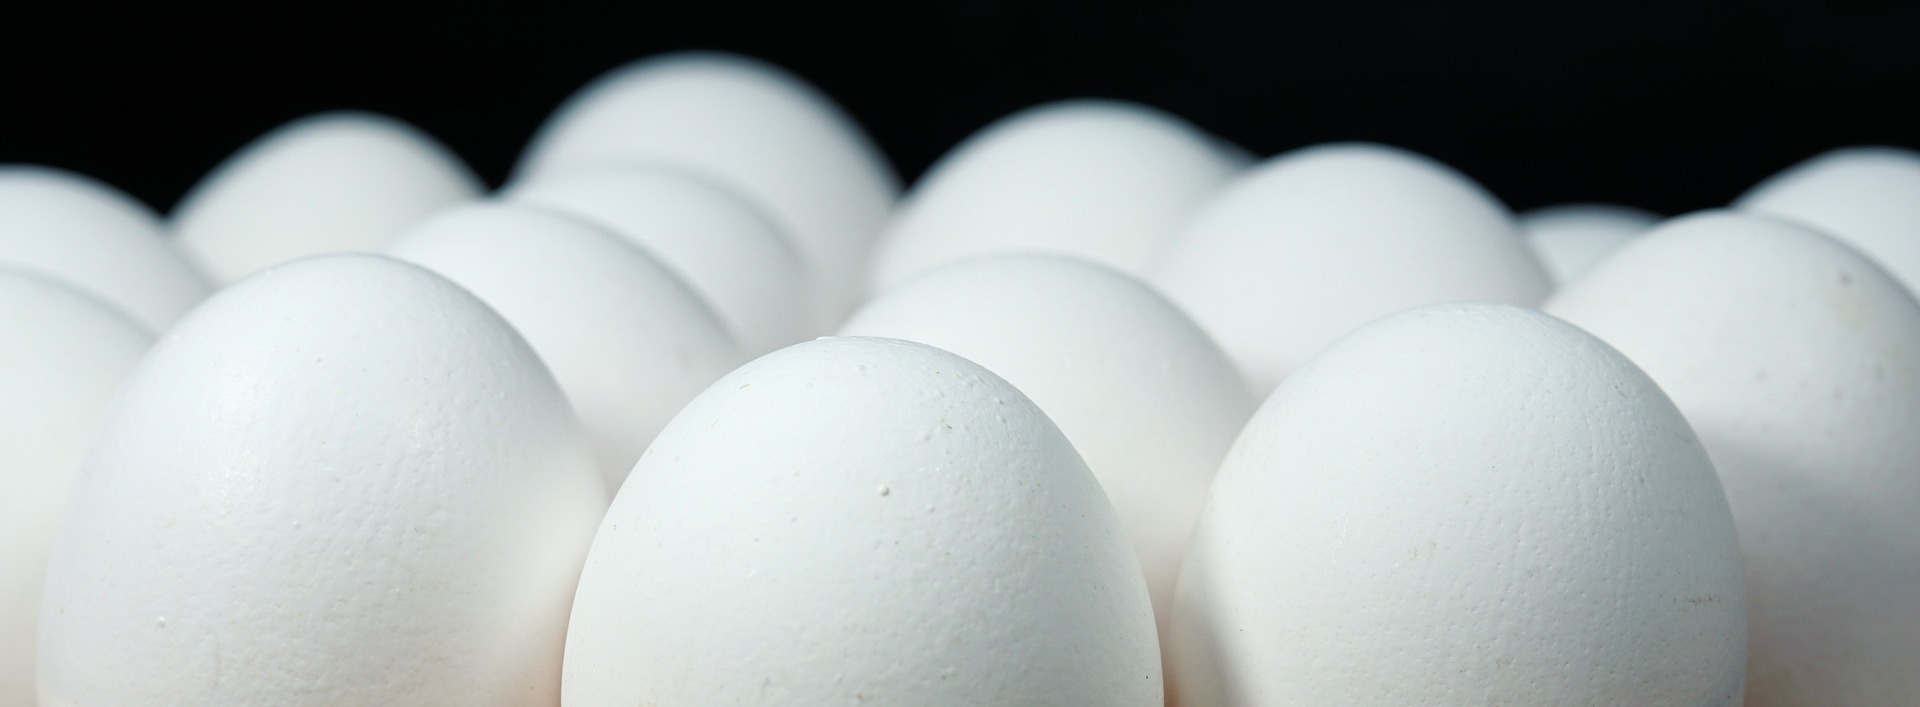 Zniesienie zakazu importu jaj konsumpcyjnych z Pol